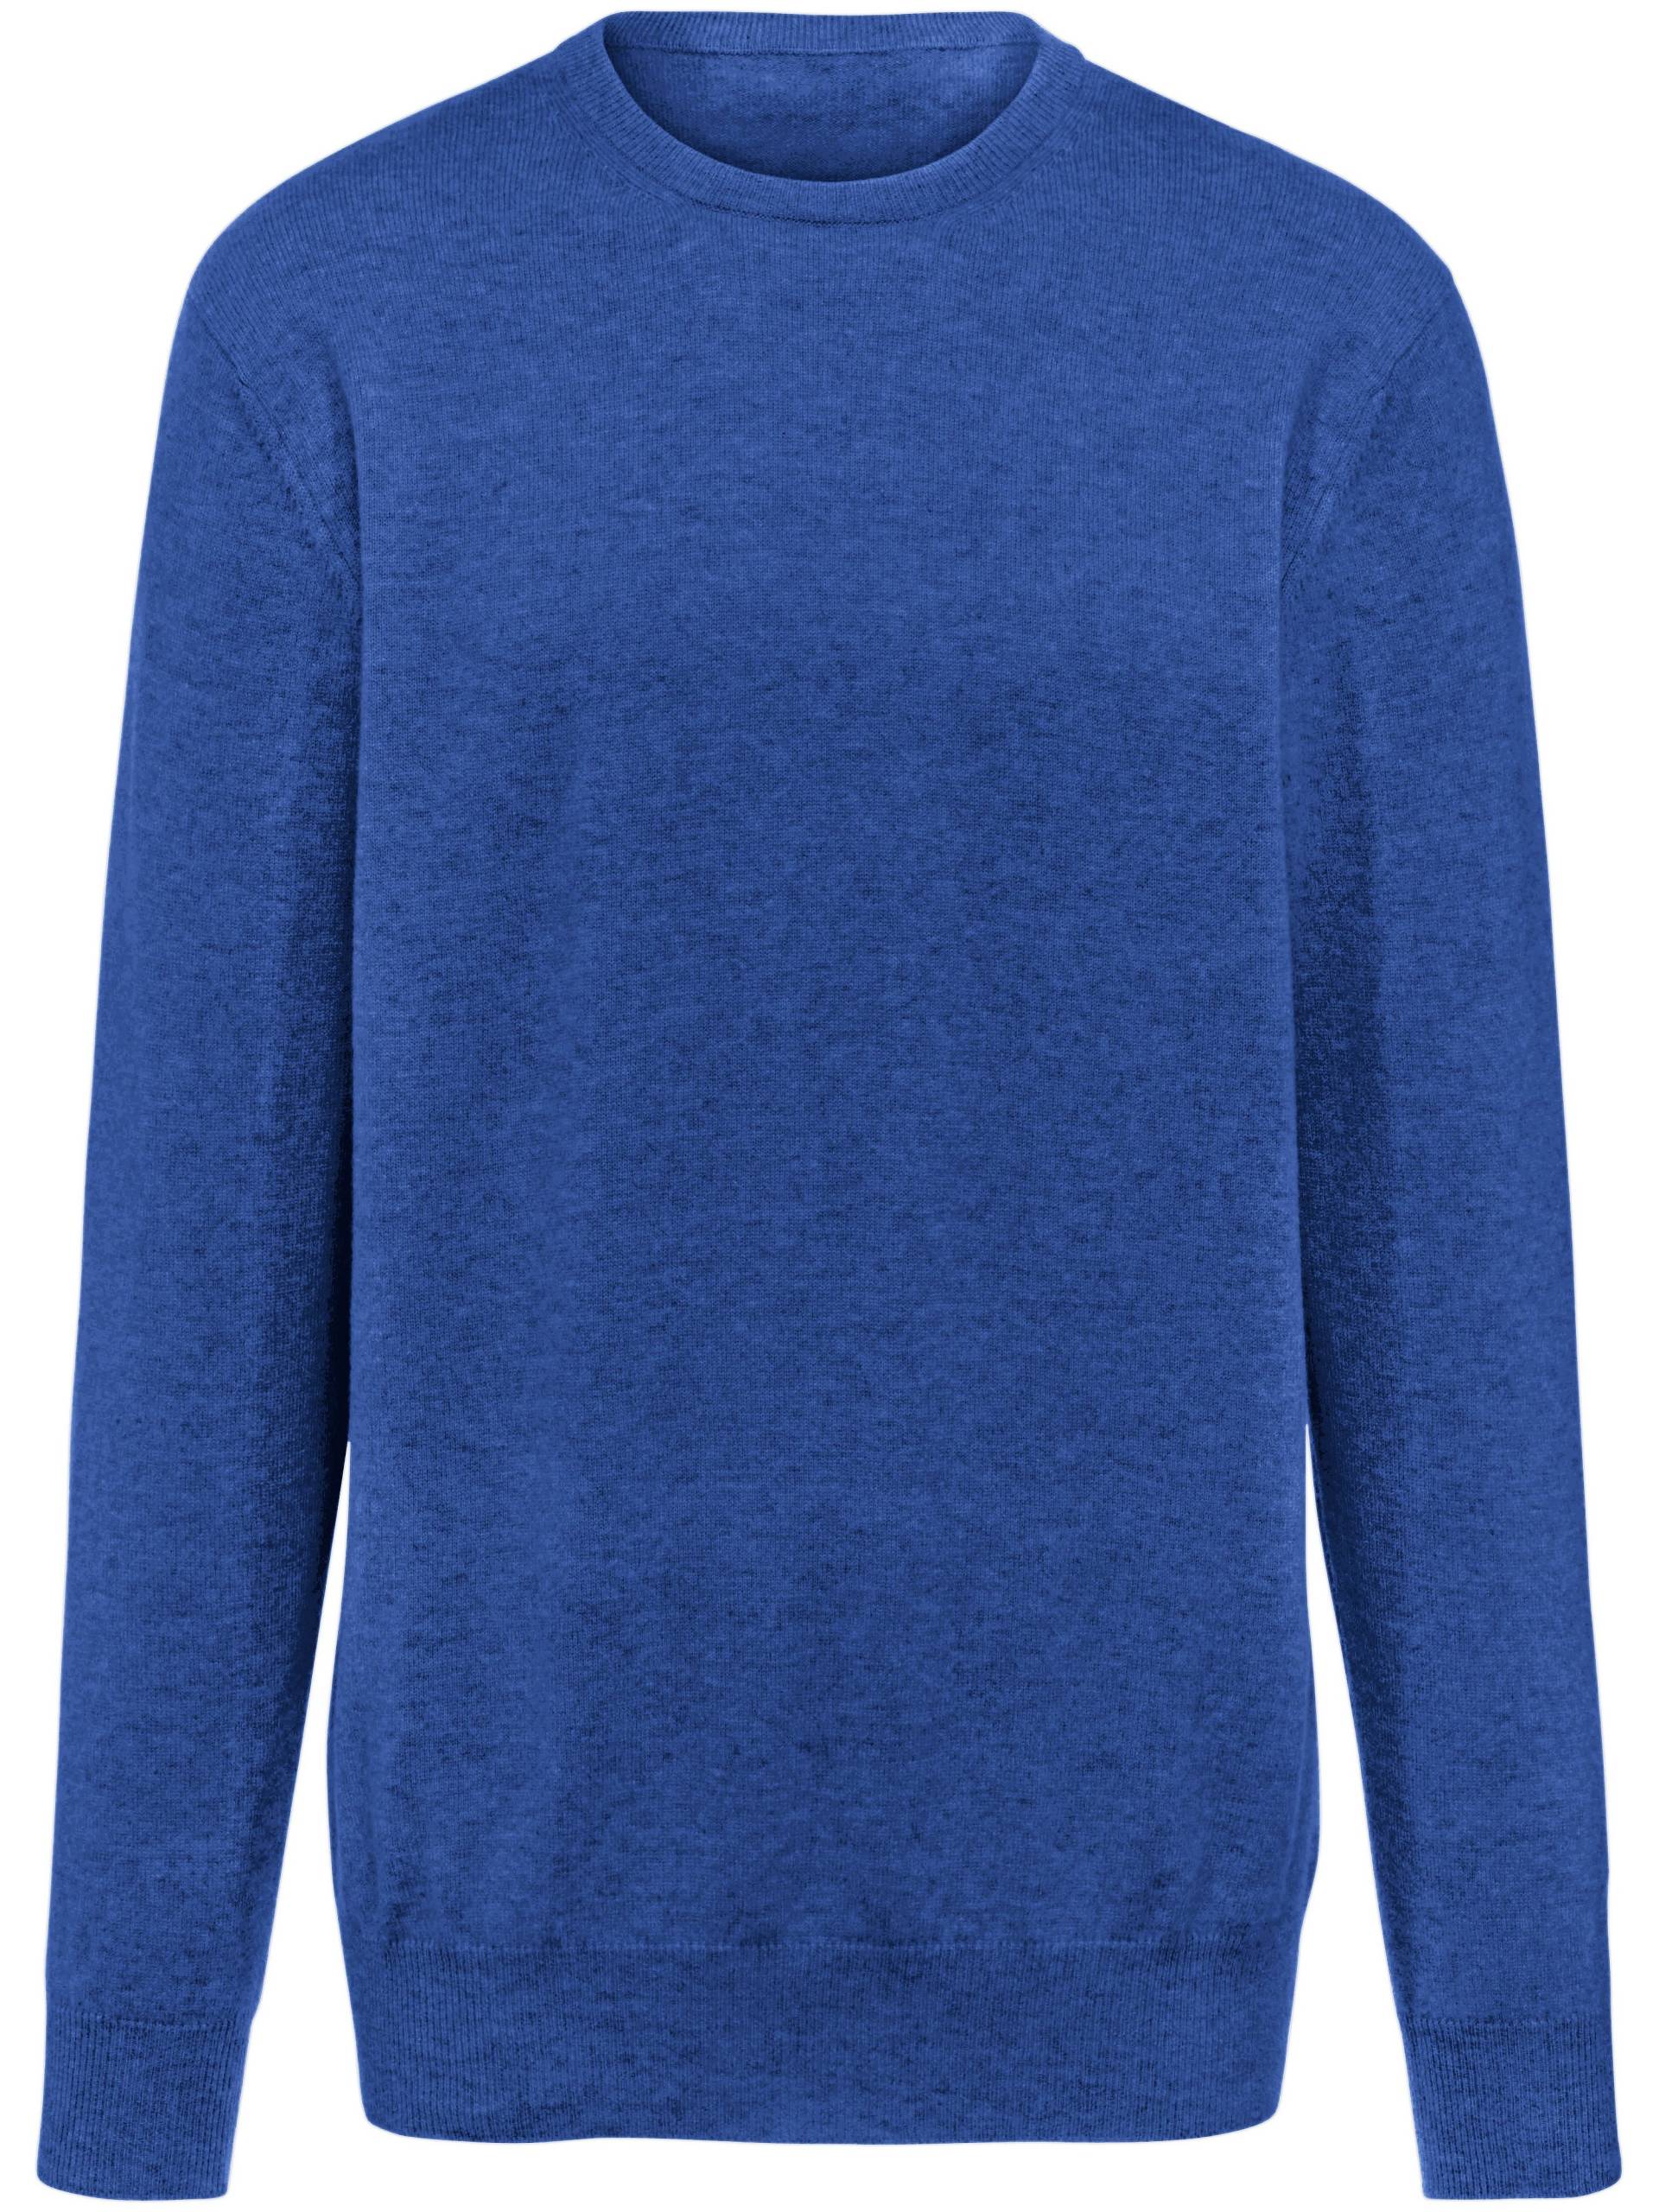 Pullover aus 100% Premium-Kaschmir Modell Ralph Peter Hahn Cashmere blau Größe: 46 von Peter Hahn Cashmere